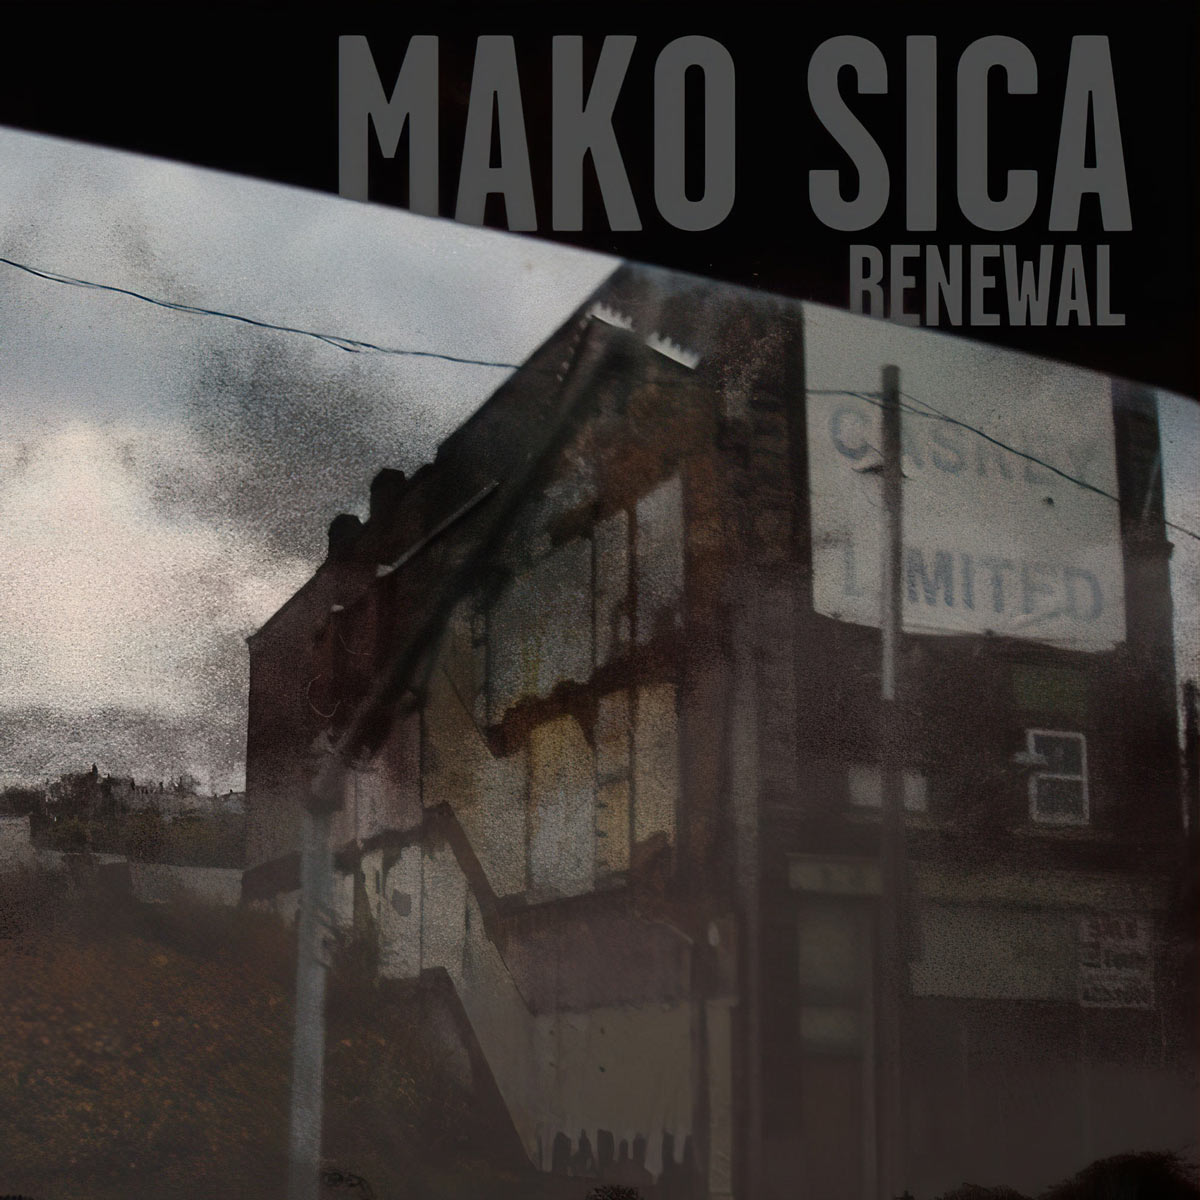 Mako Sica, Renewal, Digital Album Cover